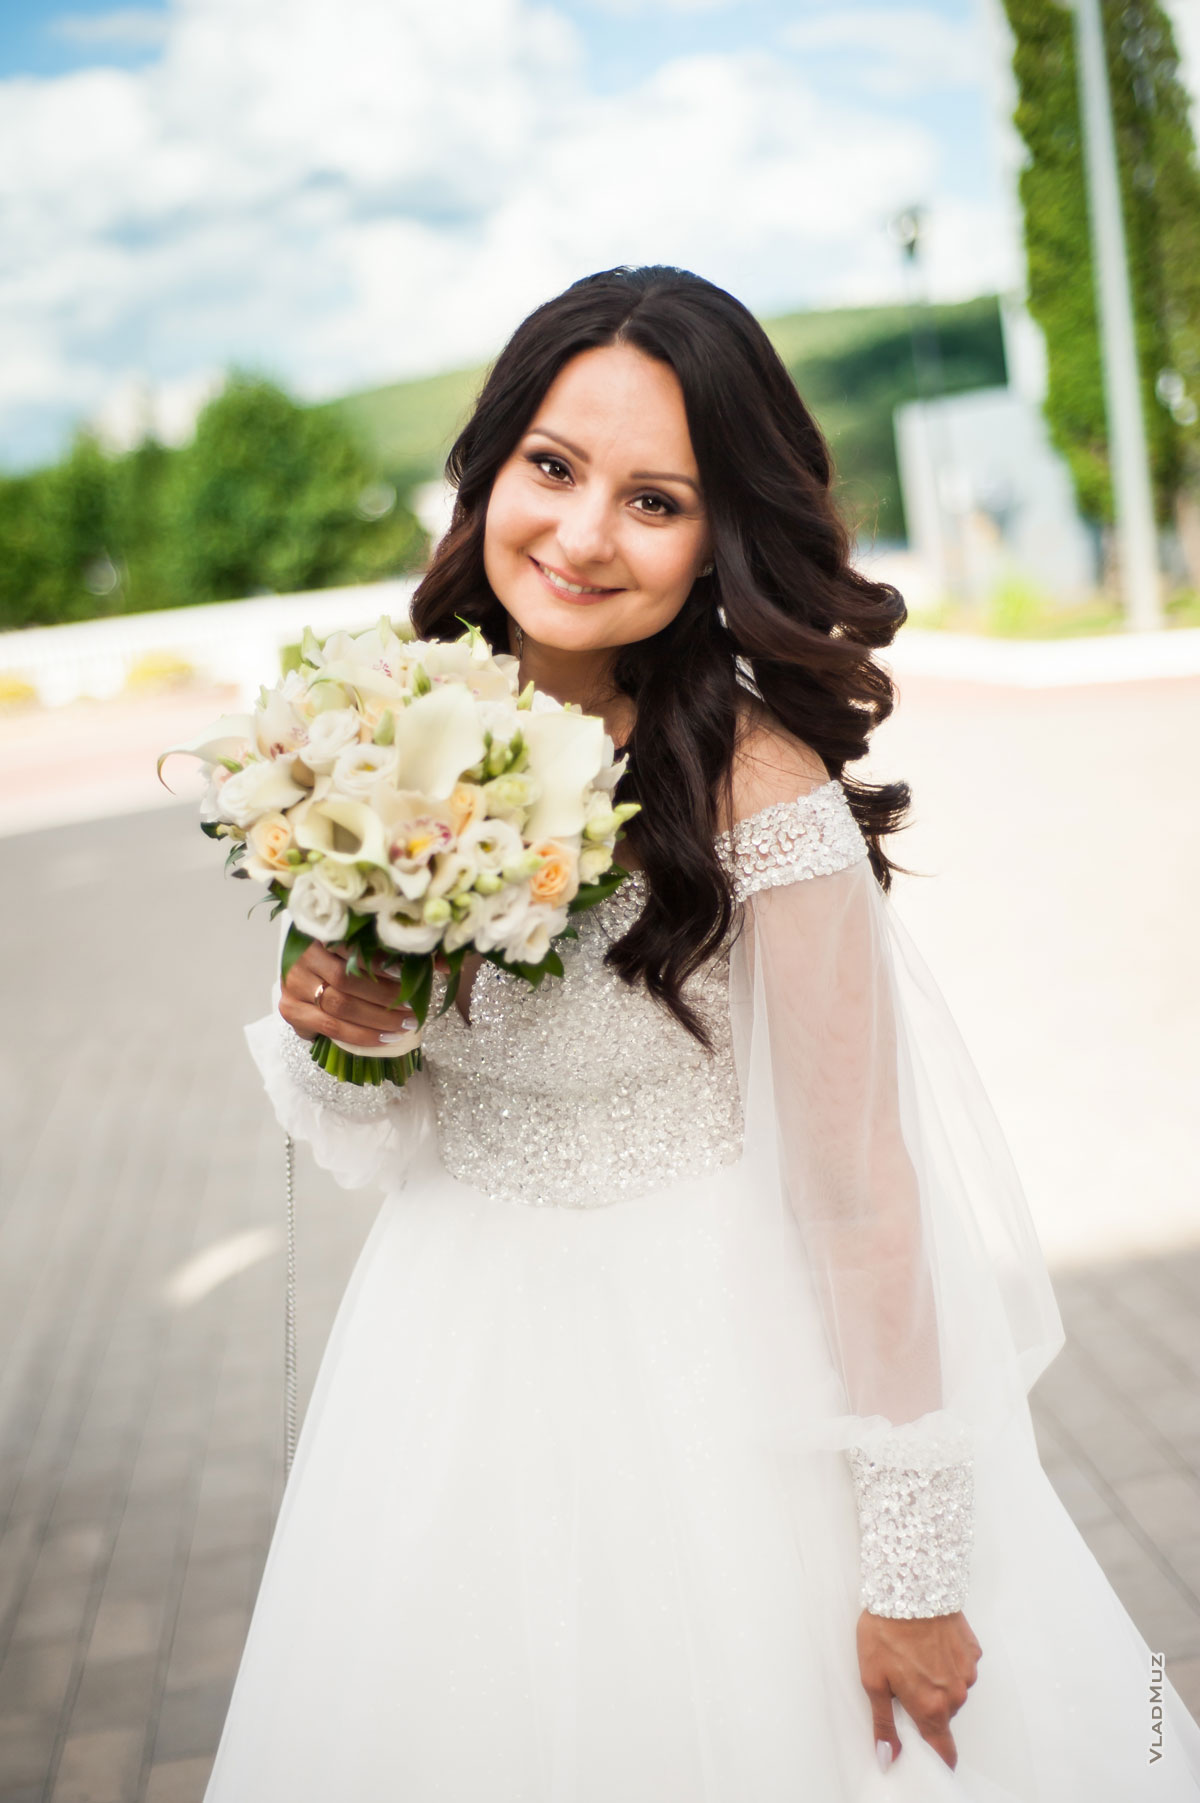 Фото красивой и счастливой невесты с букетом